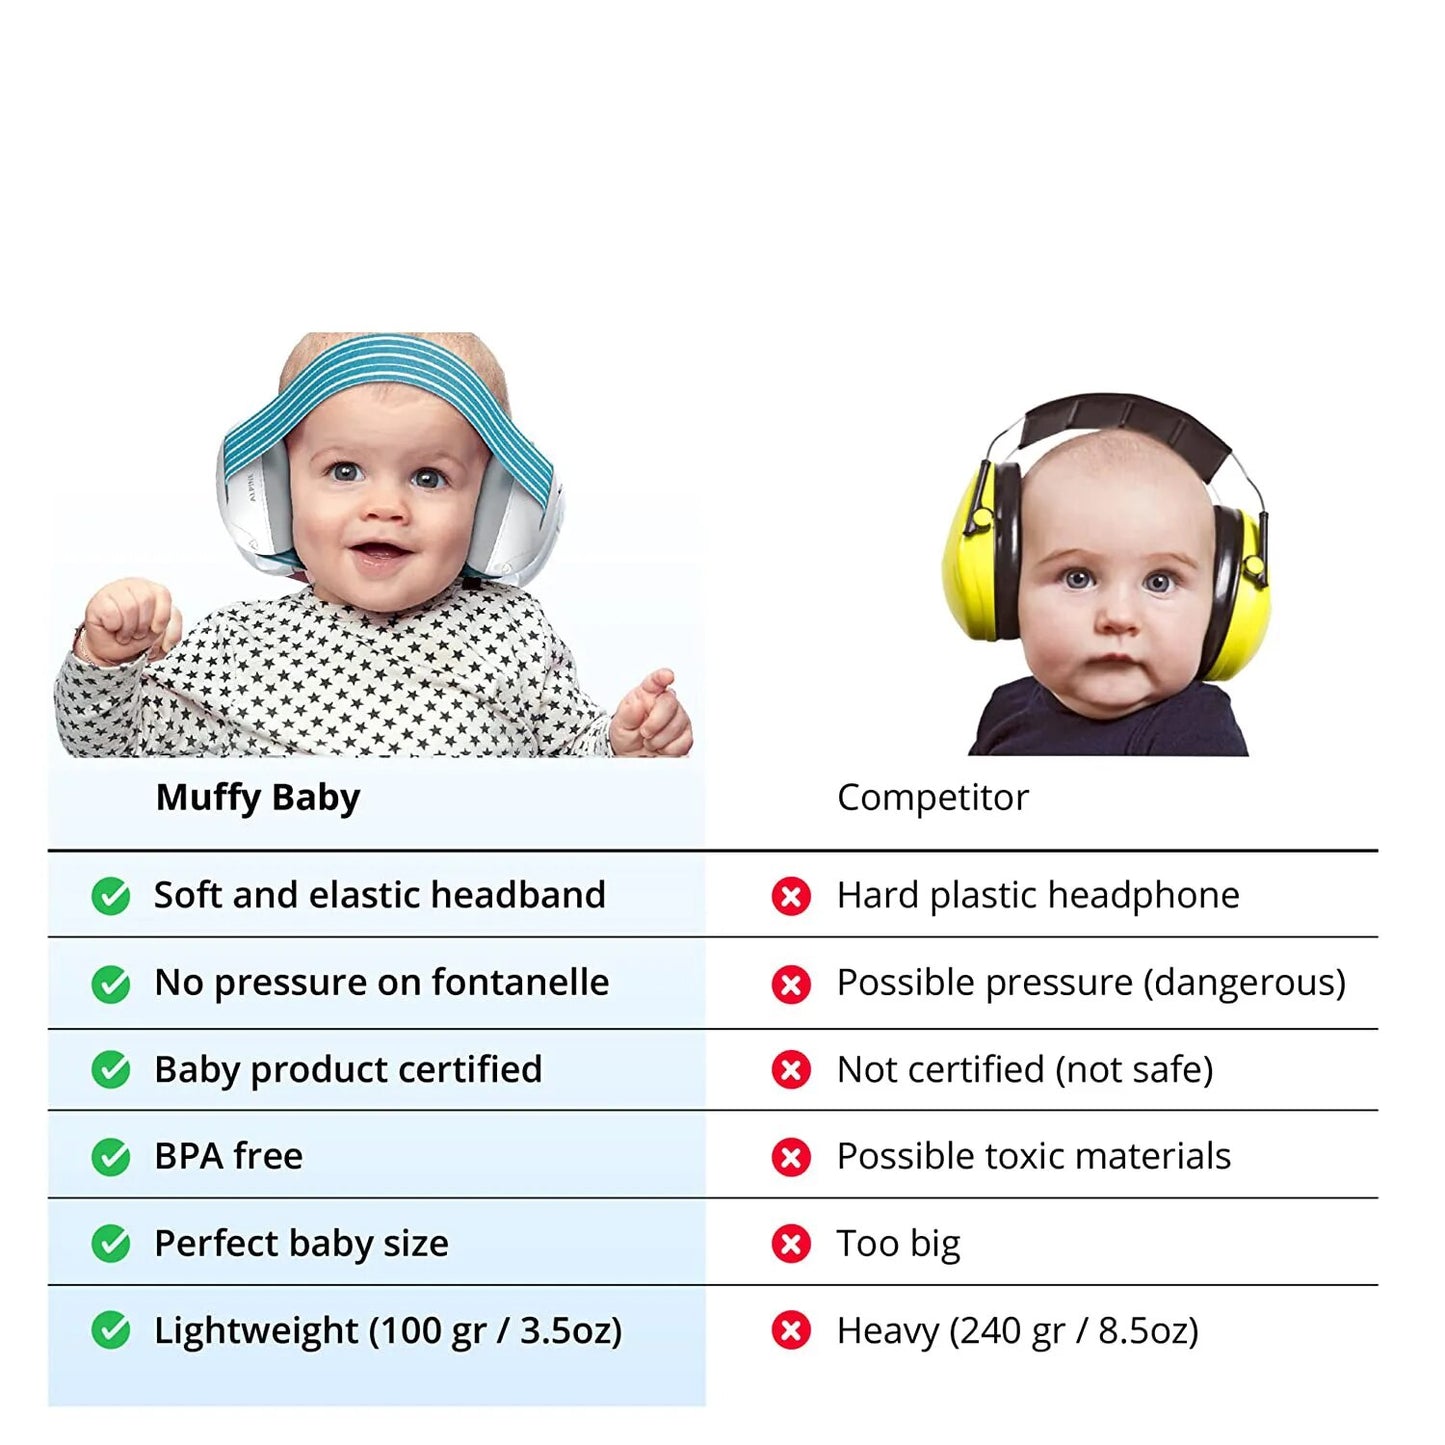 Baby BlissBlox: Sanfte Ruhe, süße Träume – Lärmschutz mit Liebe
Kuschelige Baby Ohrschützer: Deine Babys zarte Schlafbegleiter
BabyOhrenzauber: Zauberhafte Stille für glückliche Babys